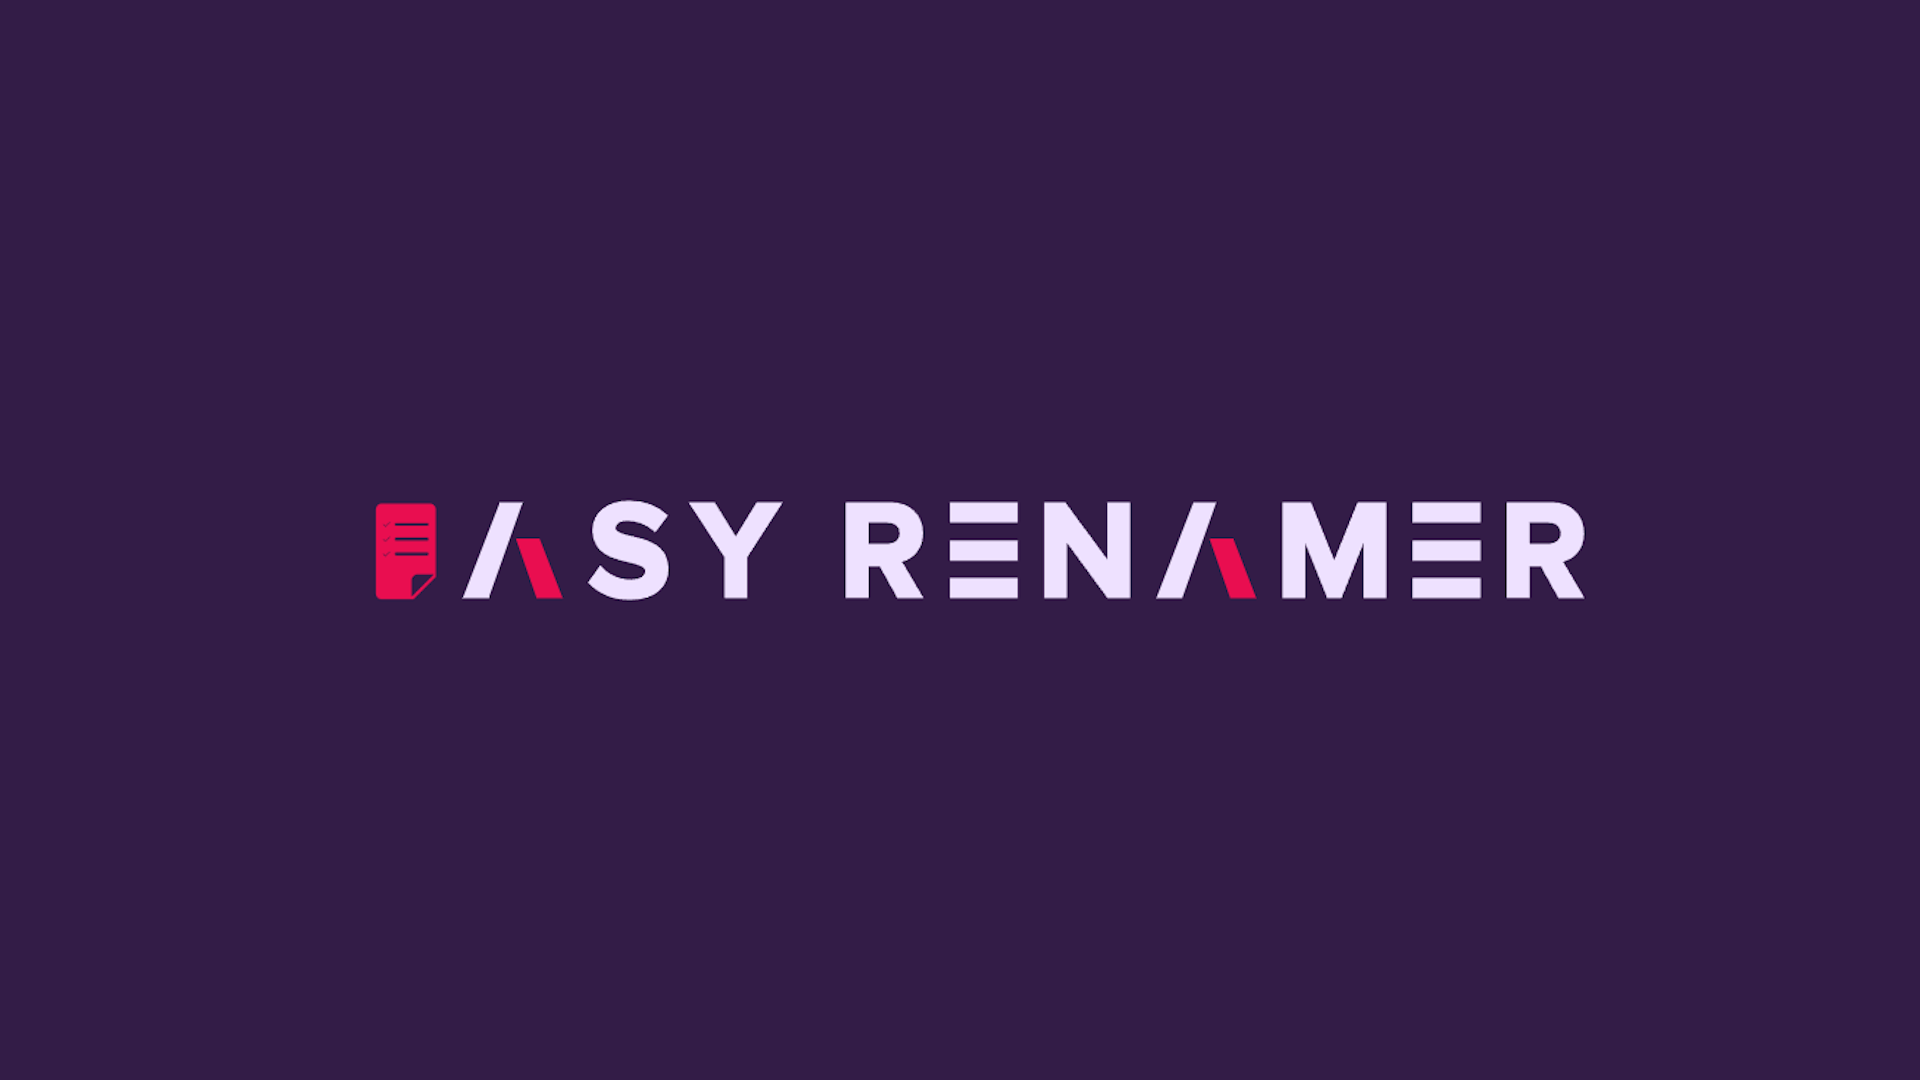 Easy Renamer - Bulk Rename Assets